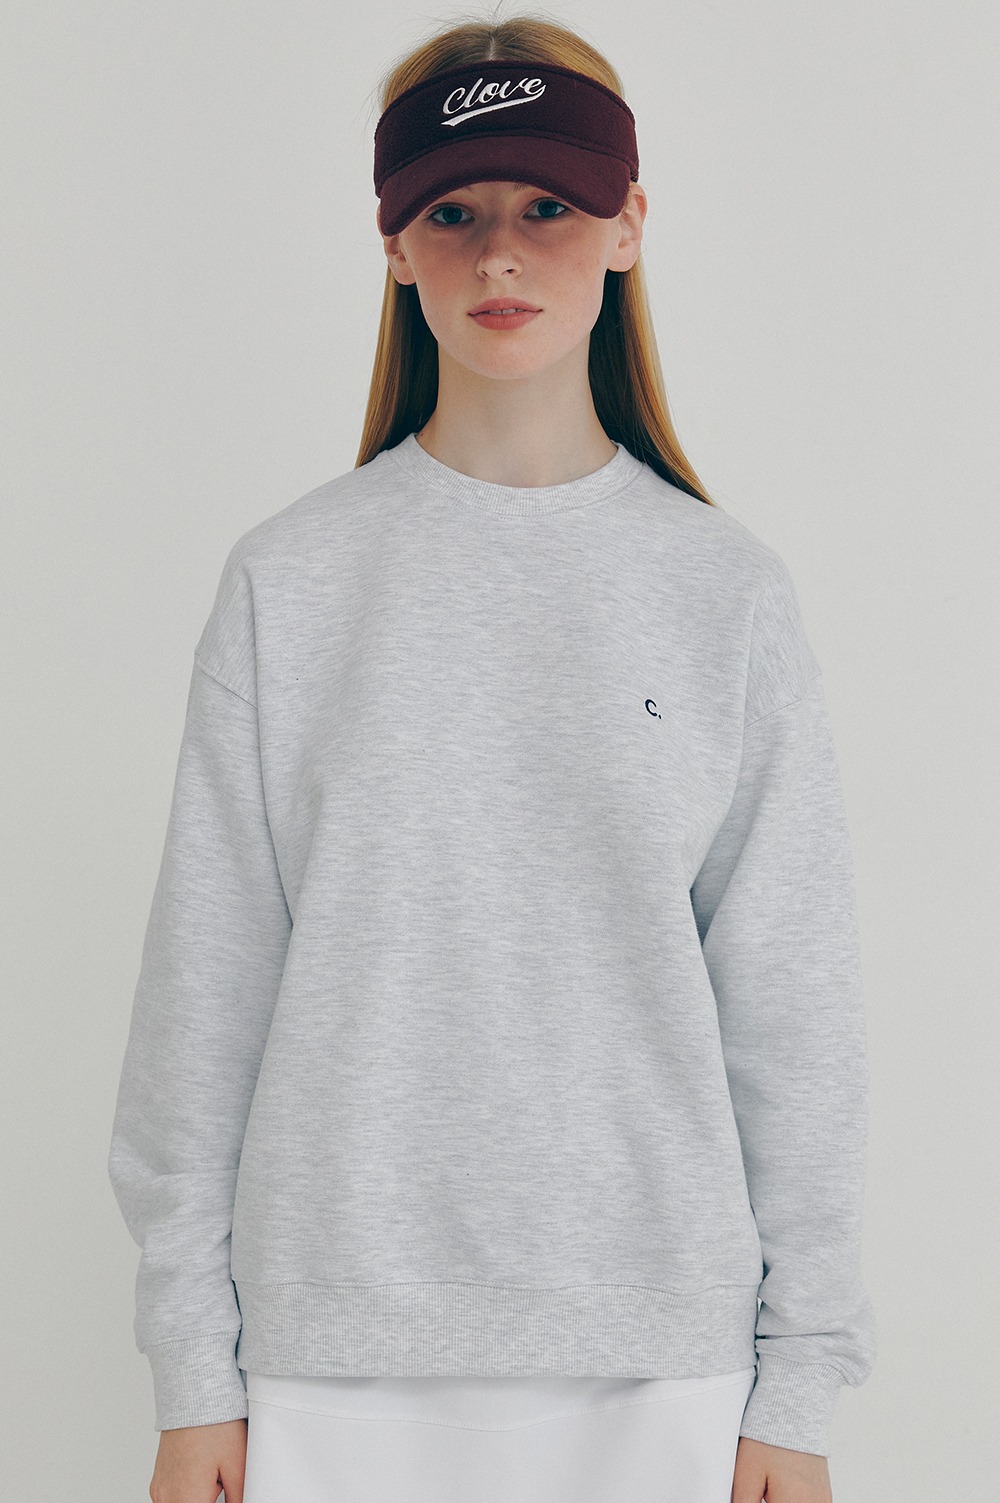 clove - Active Sweatshirt_Women (Light Grey)